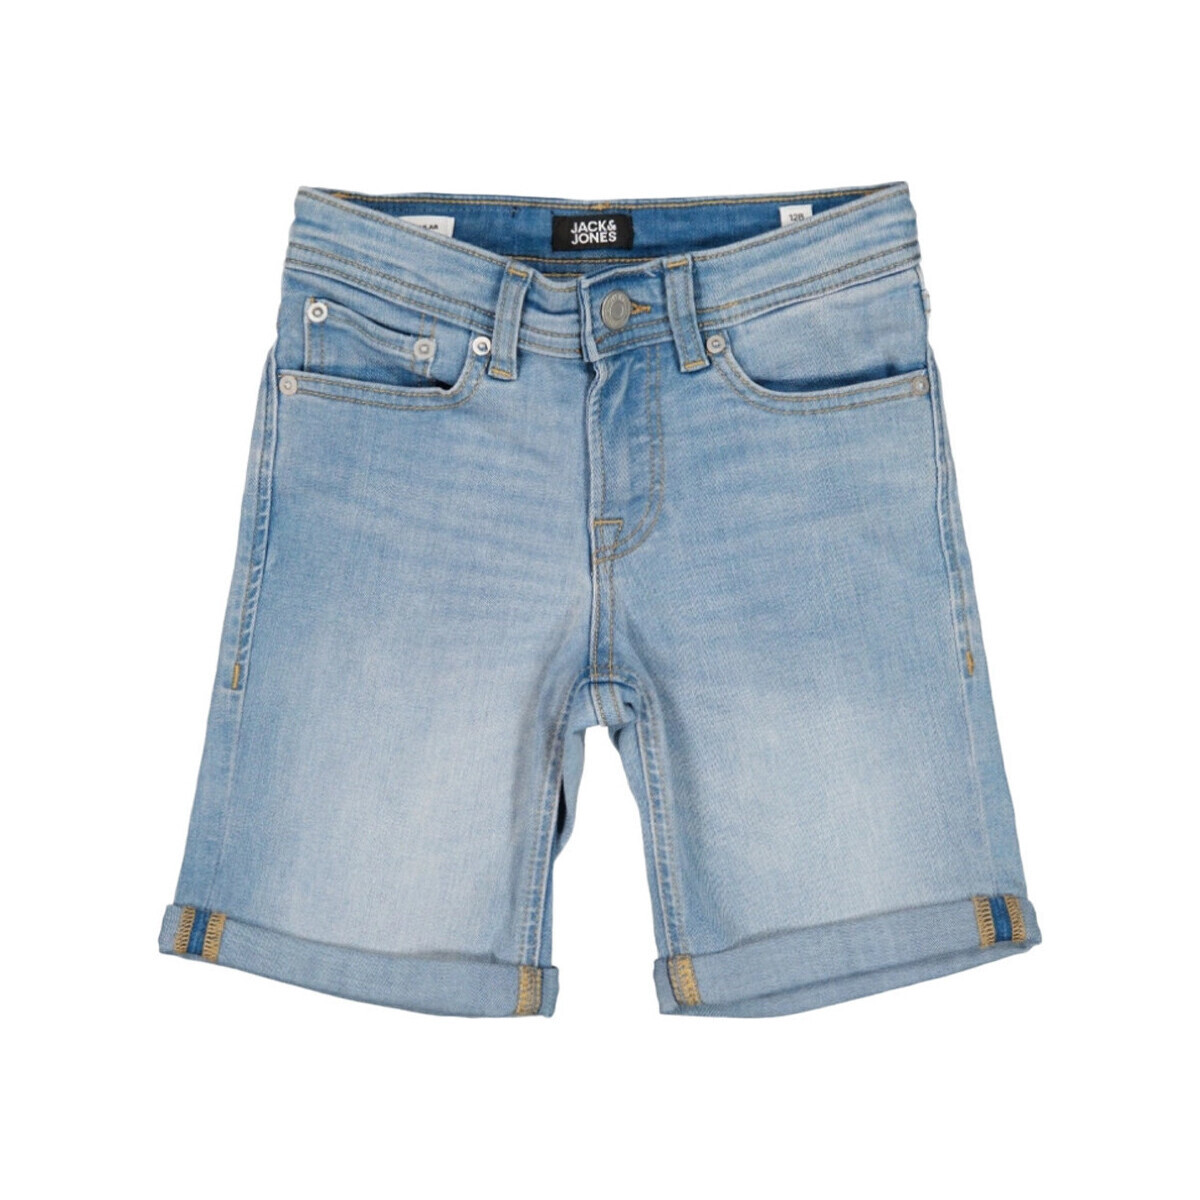 Vêtements Garçon Shorts / Bermudas Jack & Jones 12231680 Bleu